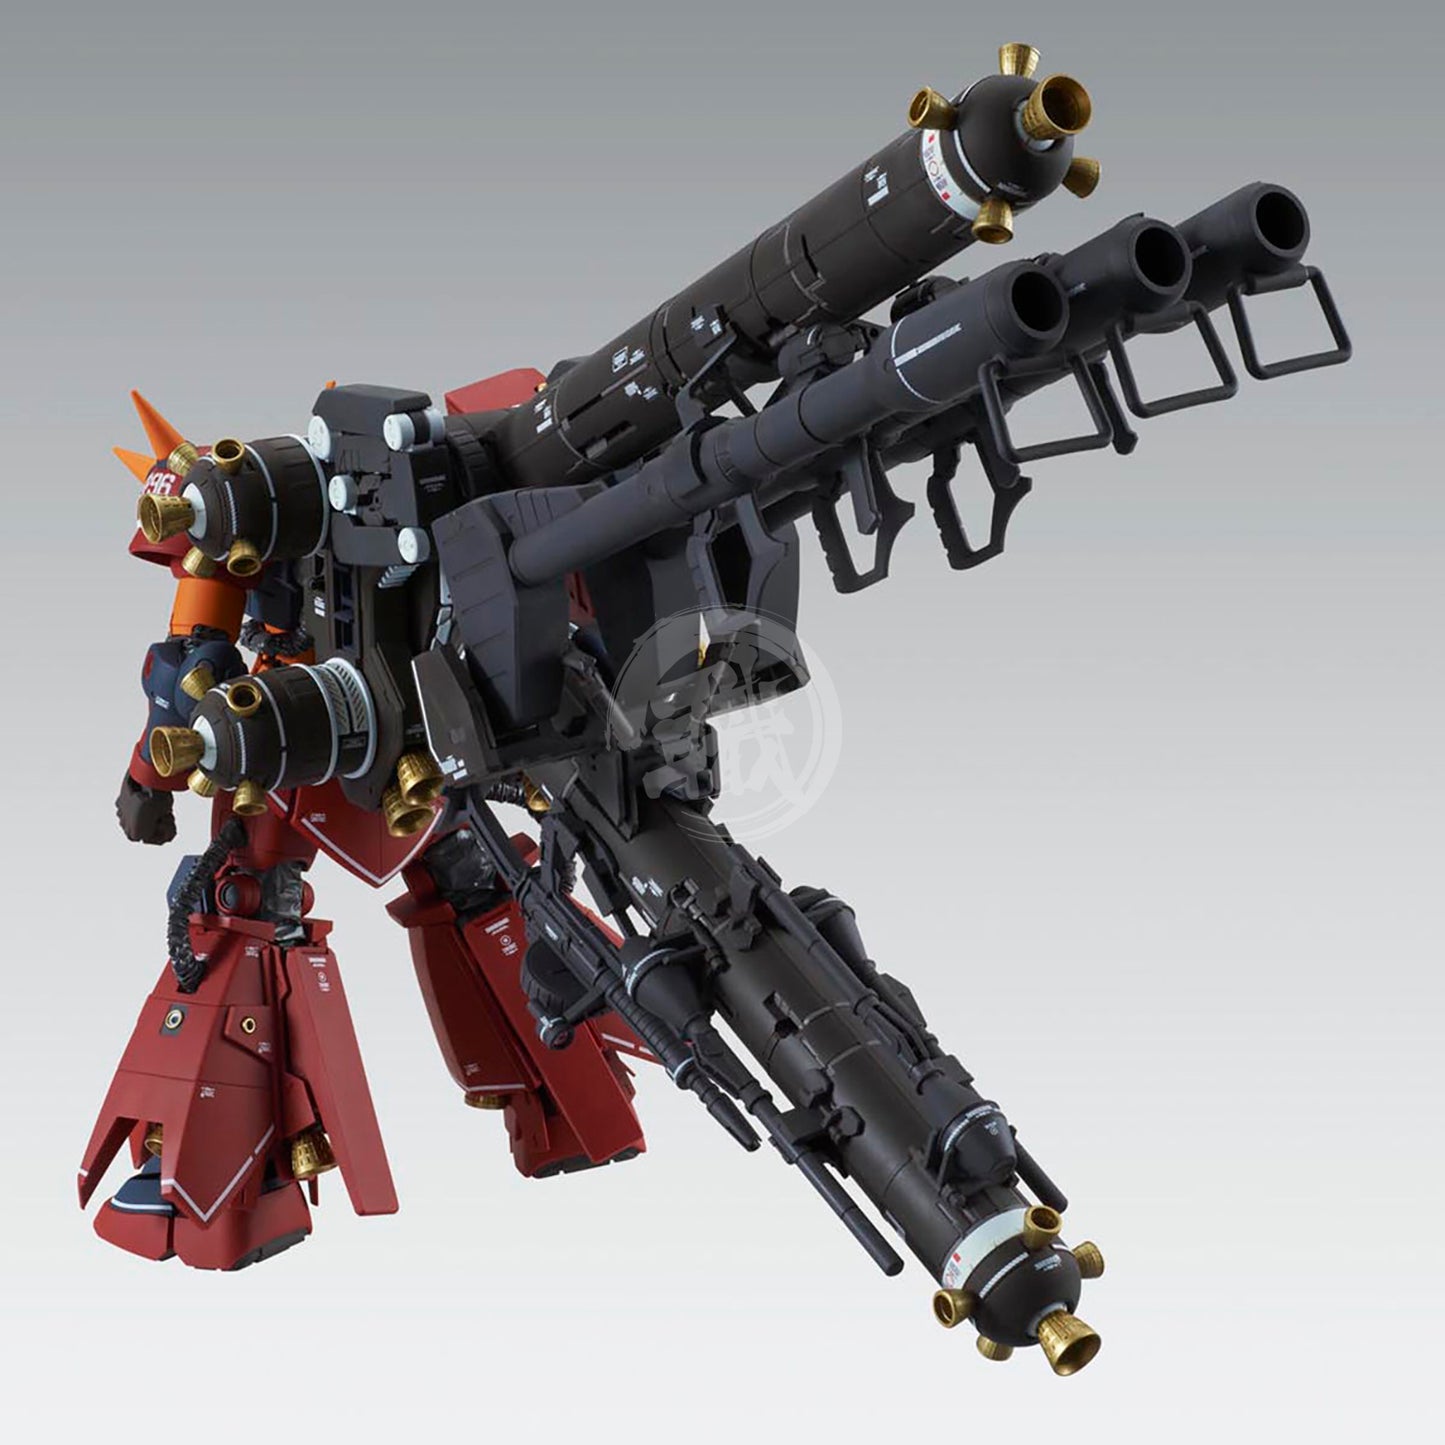 MG Zaku II High Mobility Type ["Psycho Zaku"] Ver.Ka [Gundam Thunderbolt Ver.] - ShokuninGunpla